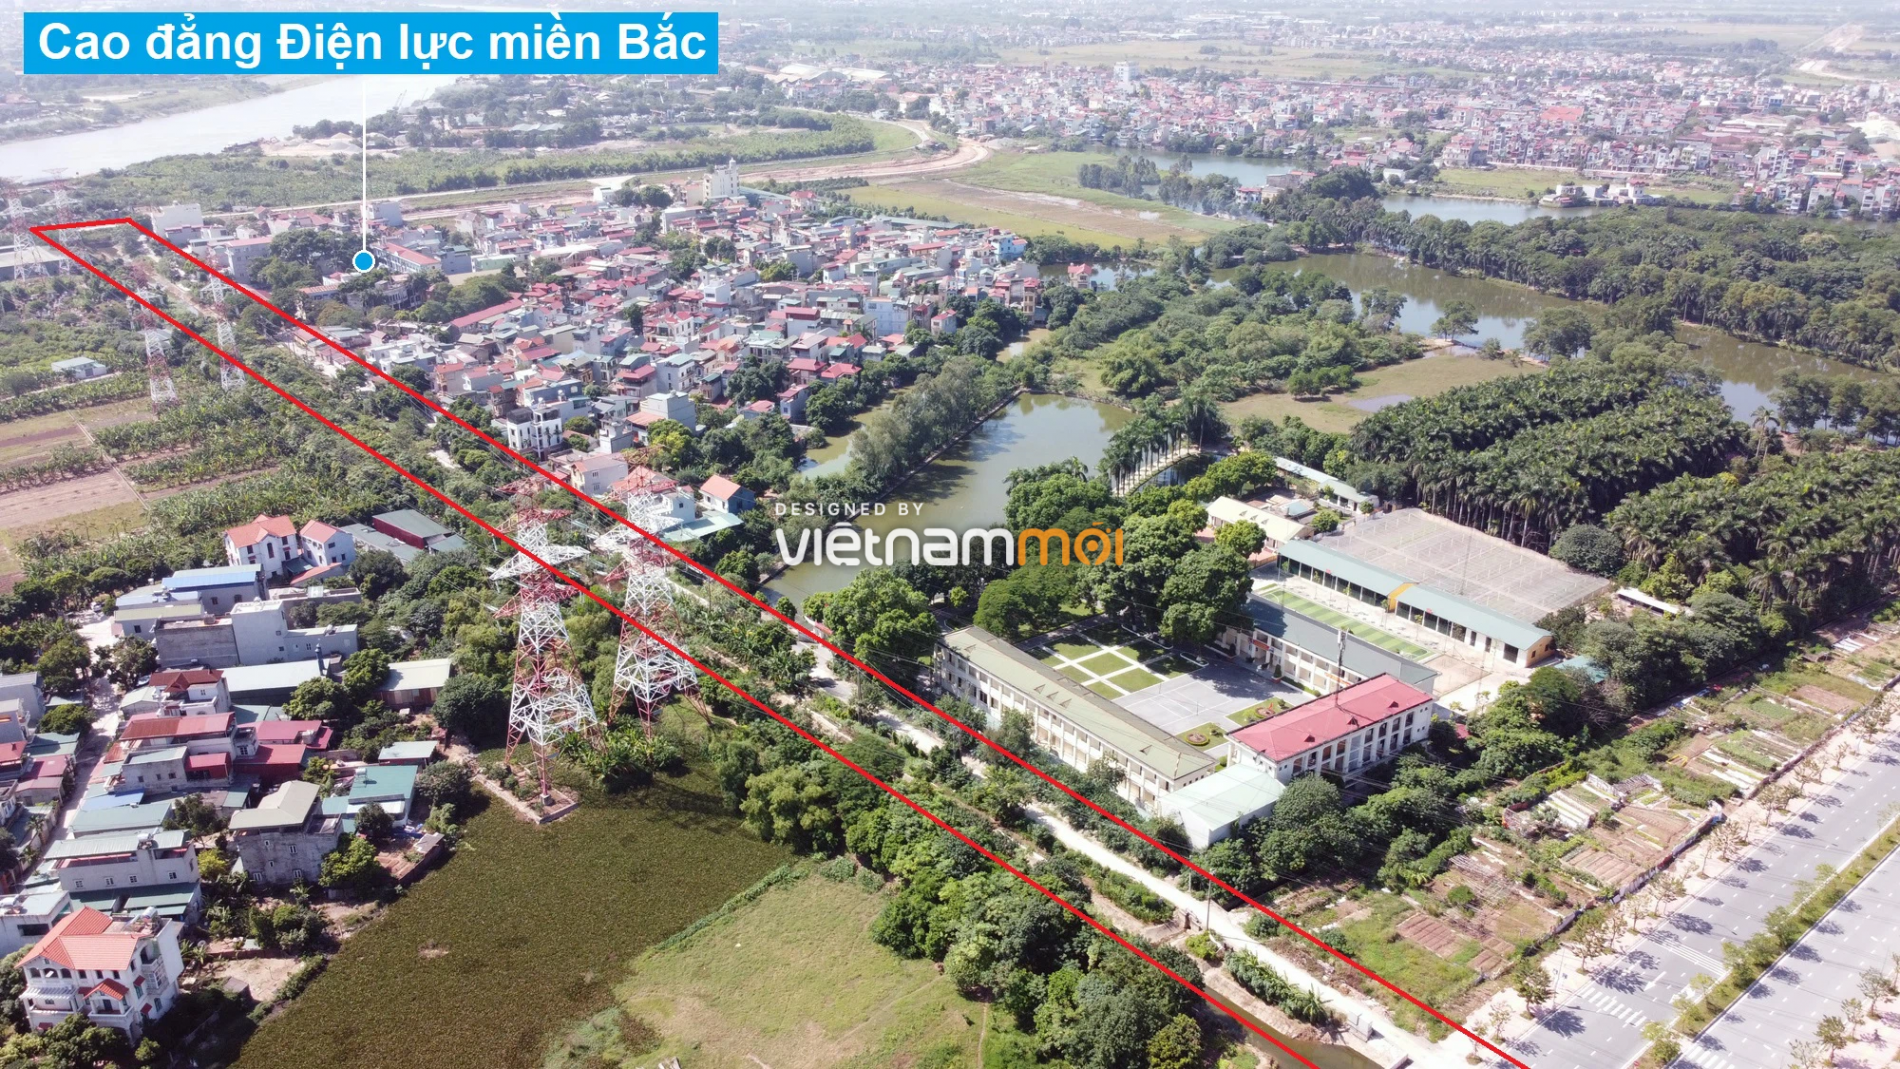 Những khu đất sắp thu hồi để mở đường ở huyện Gia Lâm, Hà Nội (phần 1) - Ảnh 11.